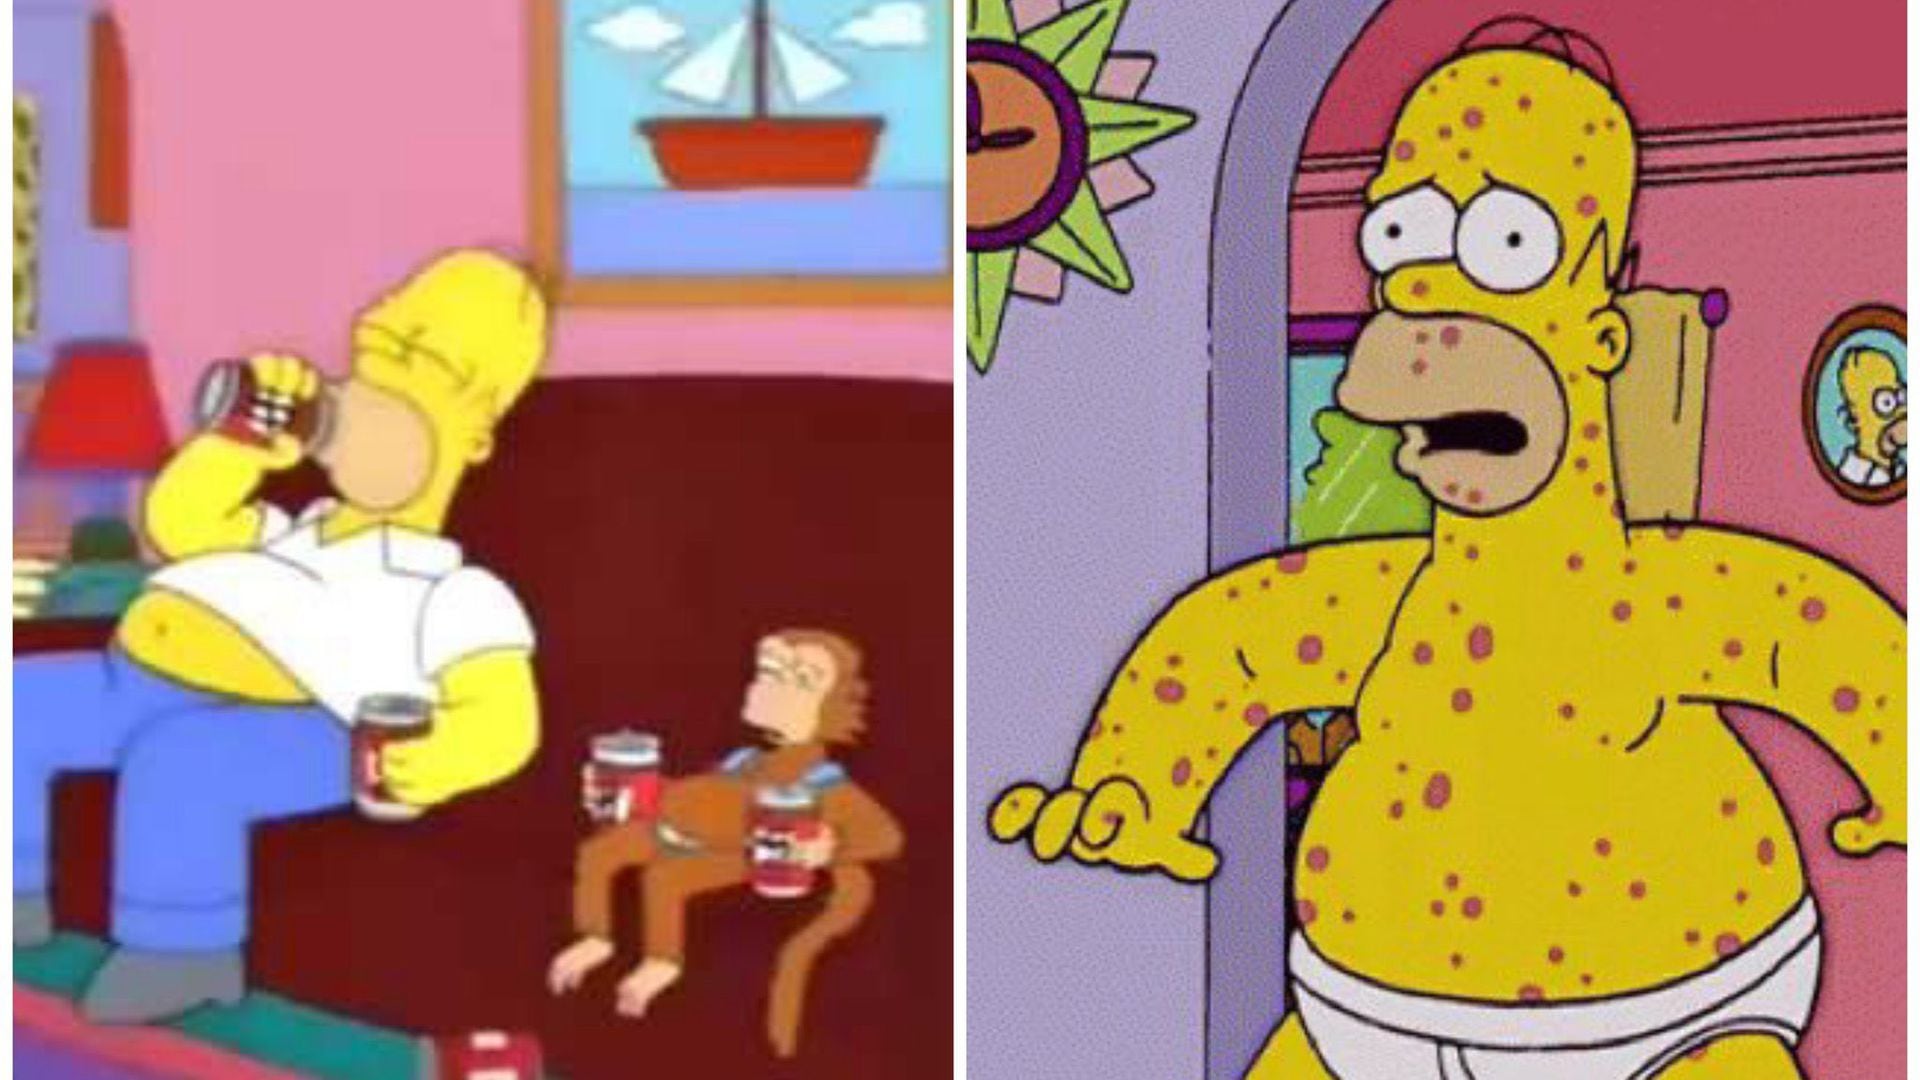 Los Simpson' predijeron la viruela del mono?